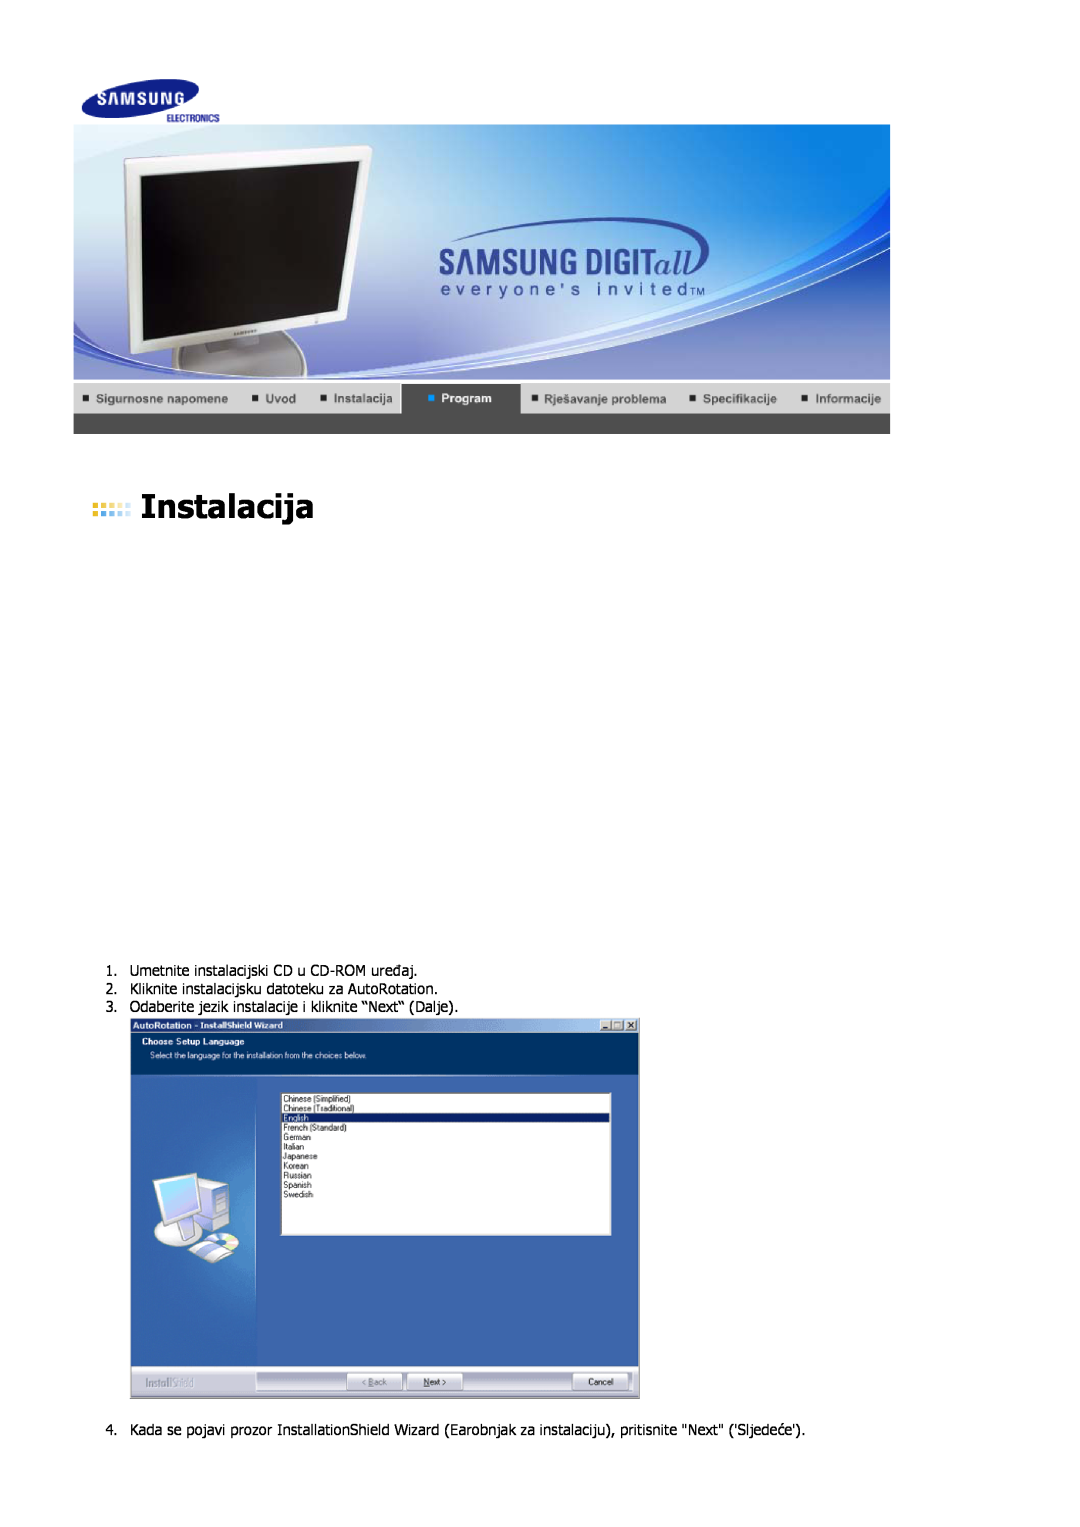 Samsung LS17HJDQHV/EDC, LS19HJDQHV/EDC, LS17HJDQFV/EDC manual Instalacija, Umetnite instalacijski CD u CD-ROM uređaj 